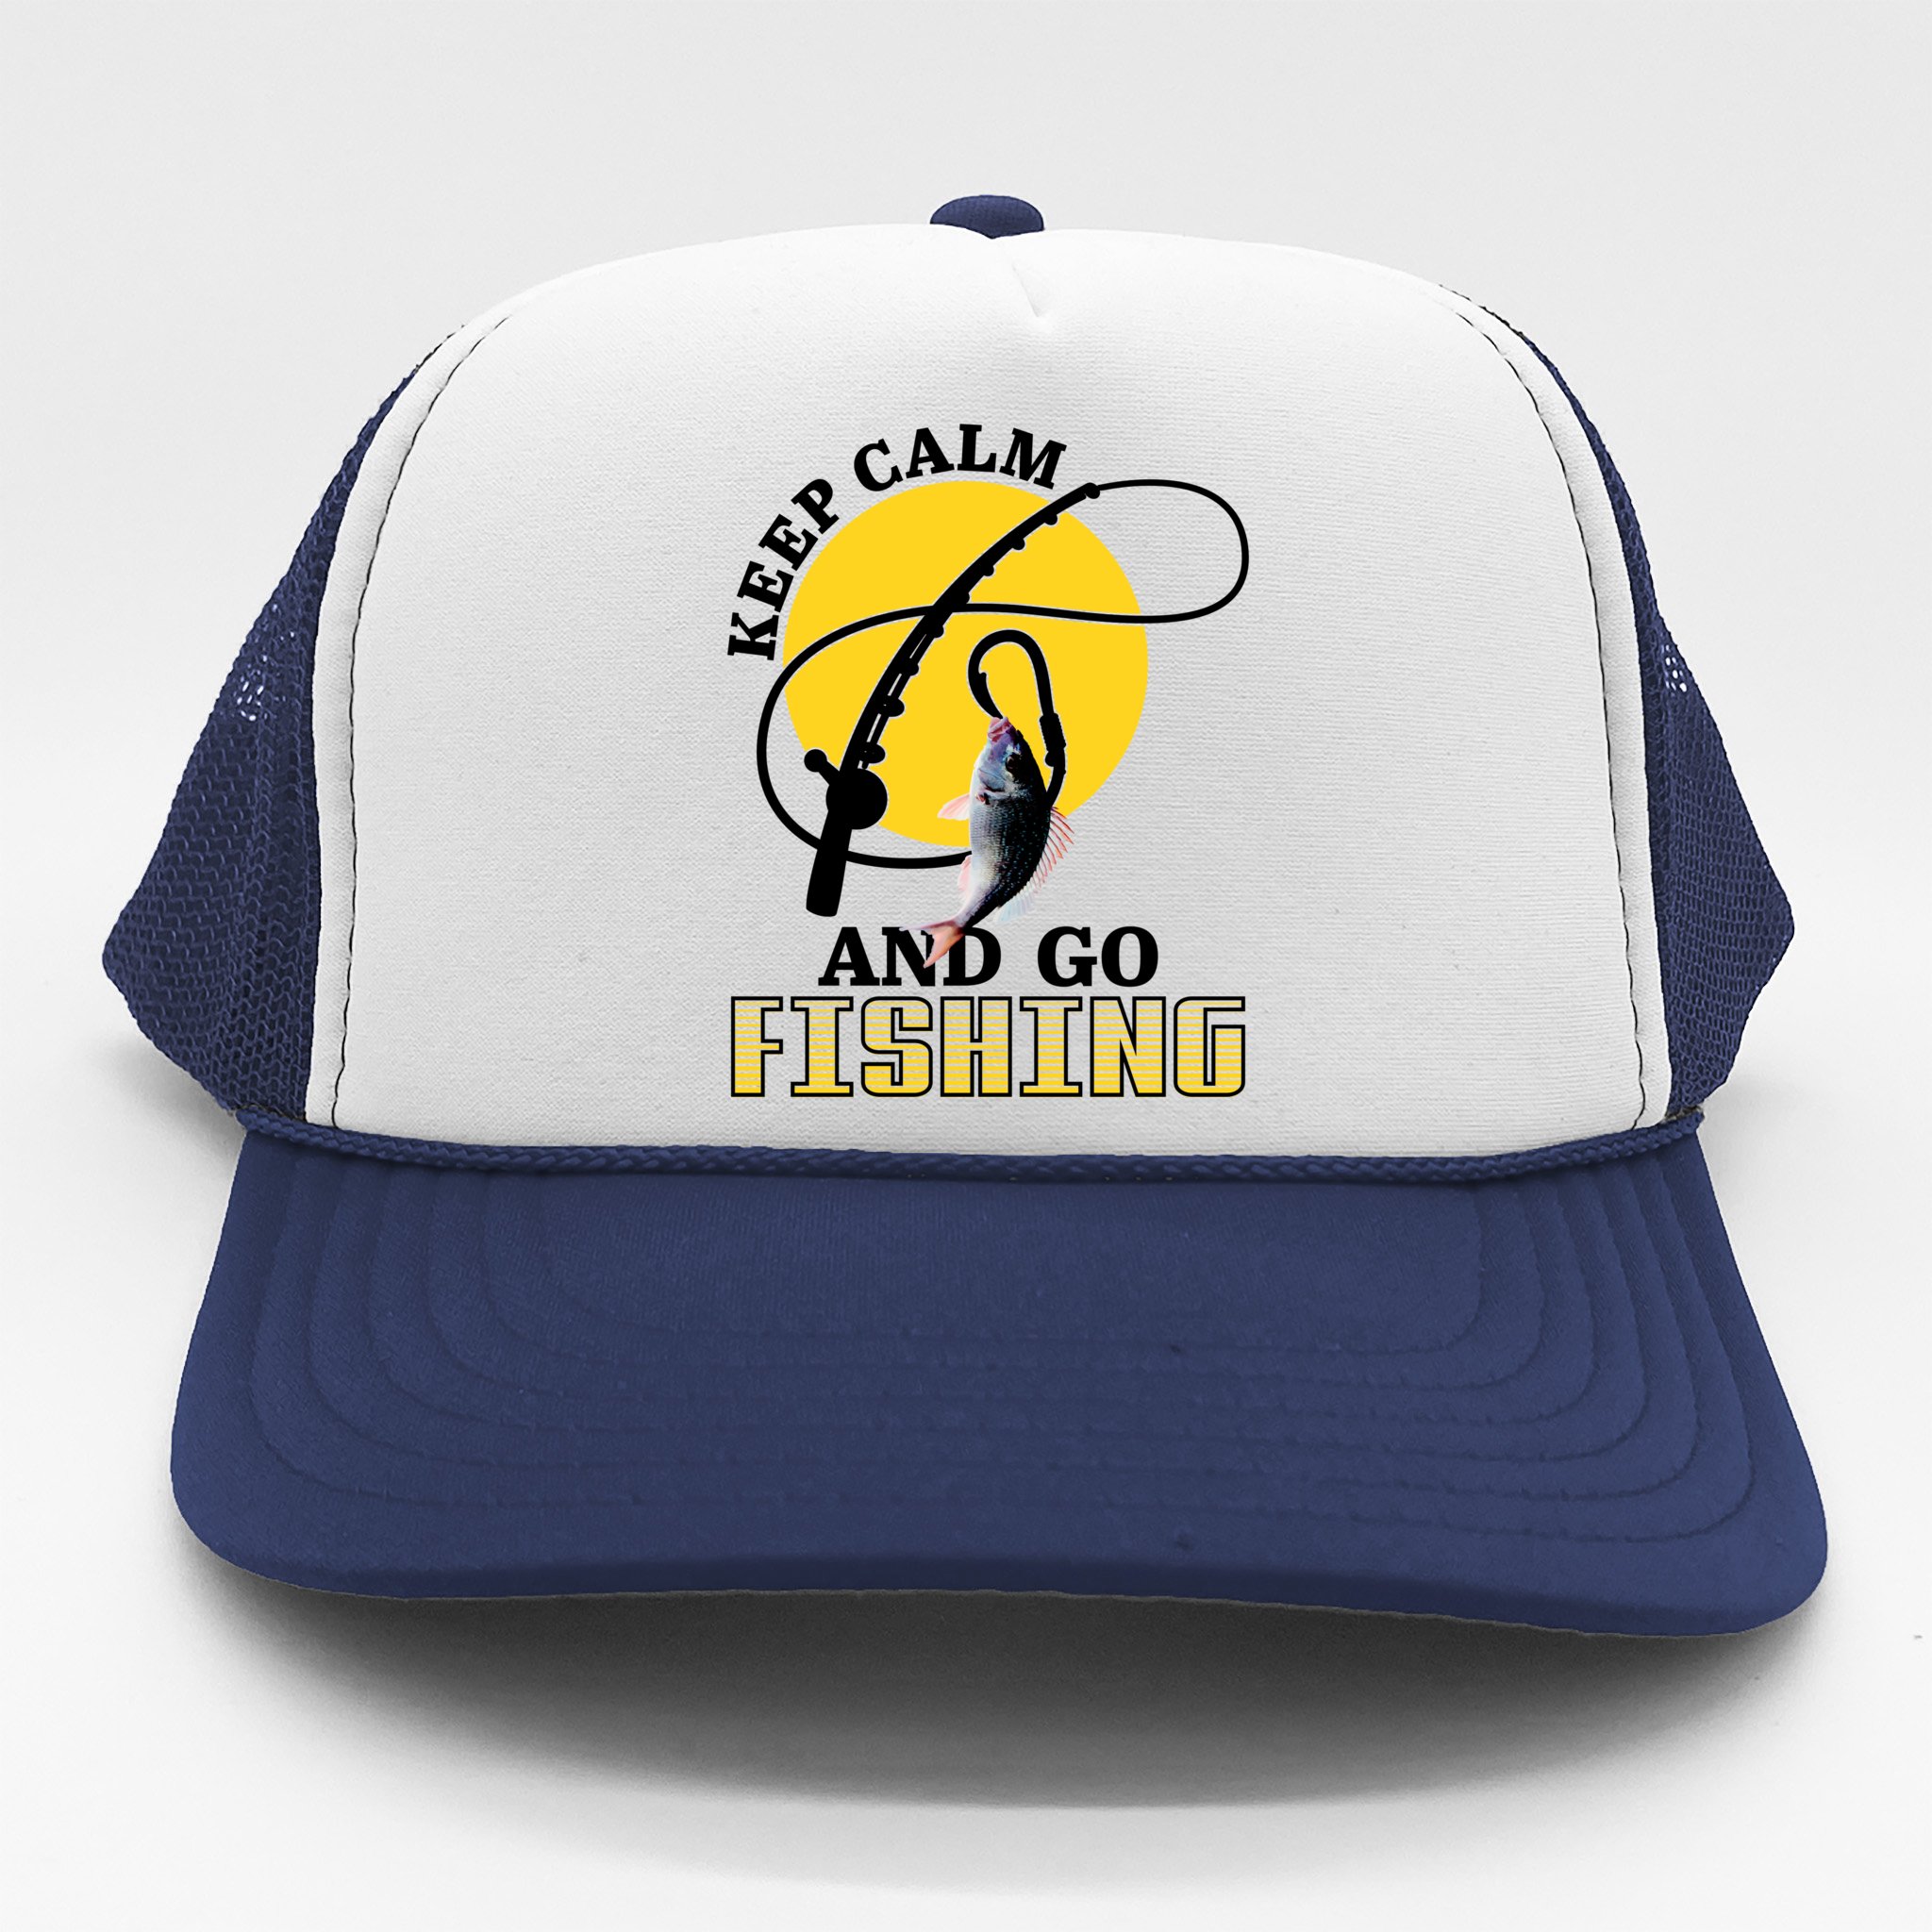 Gone Fishing Logo Trucker Hat